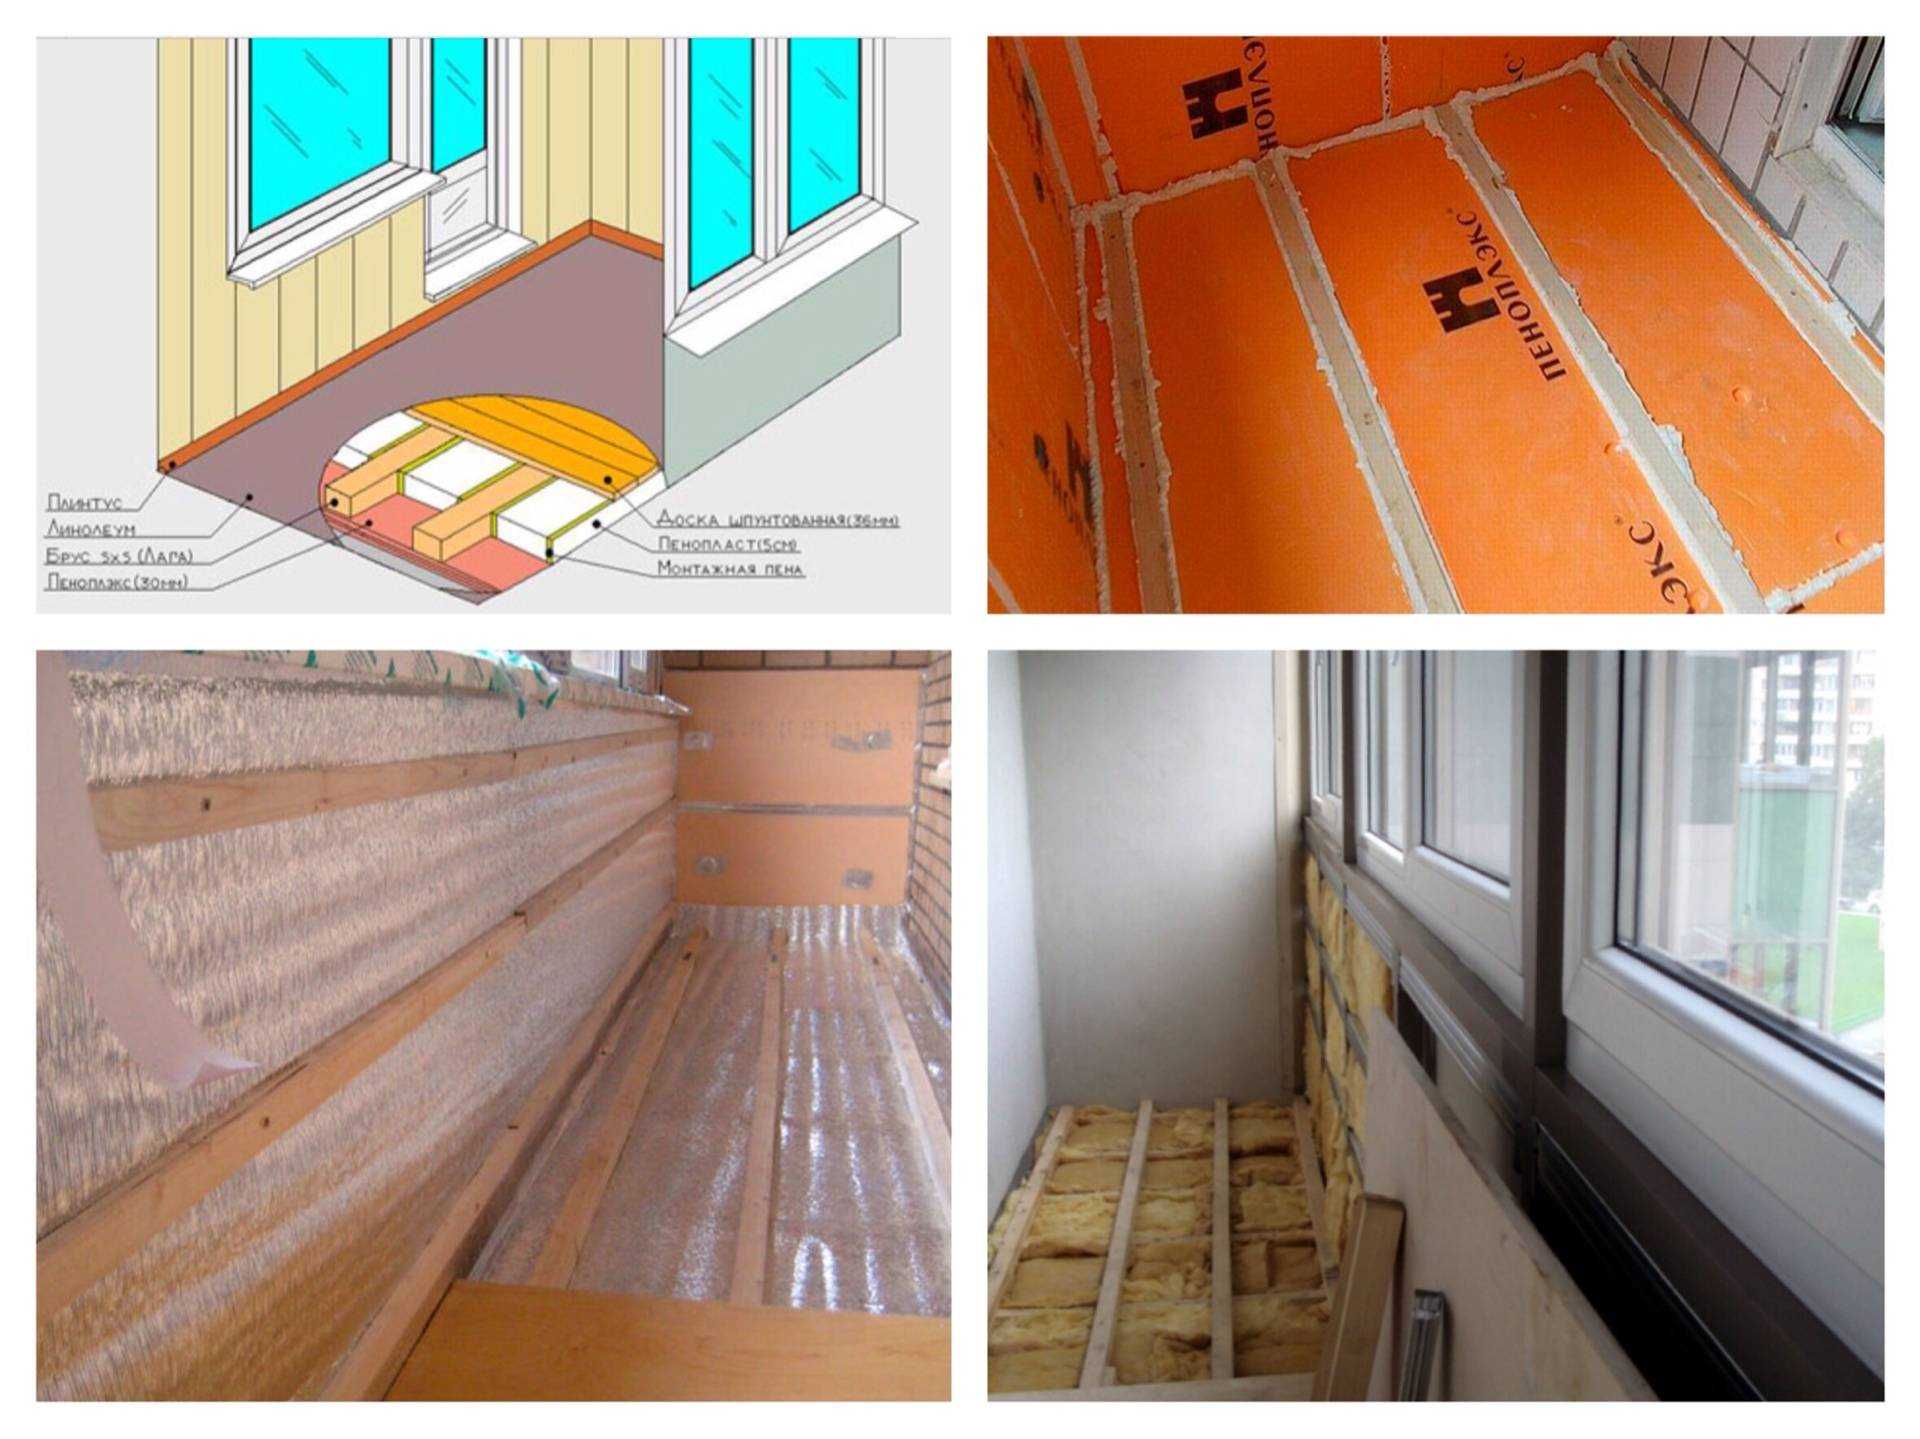 Как утеплить пол на балконе своими руками: материалы и инструкция